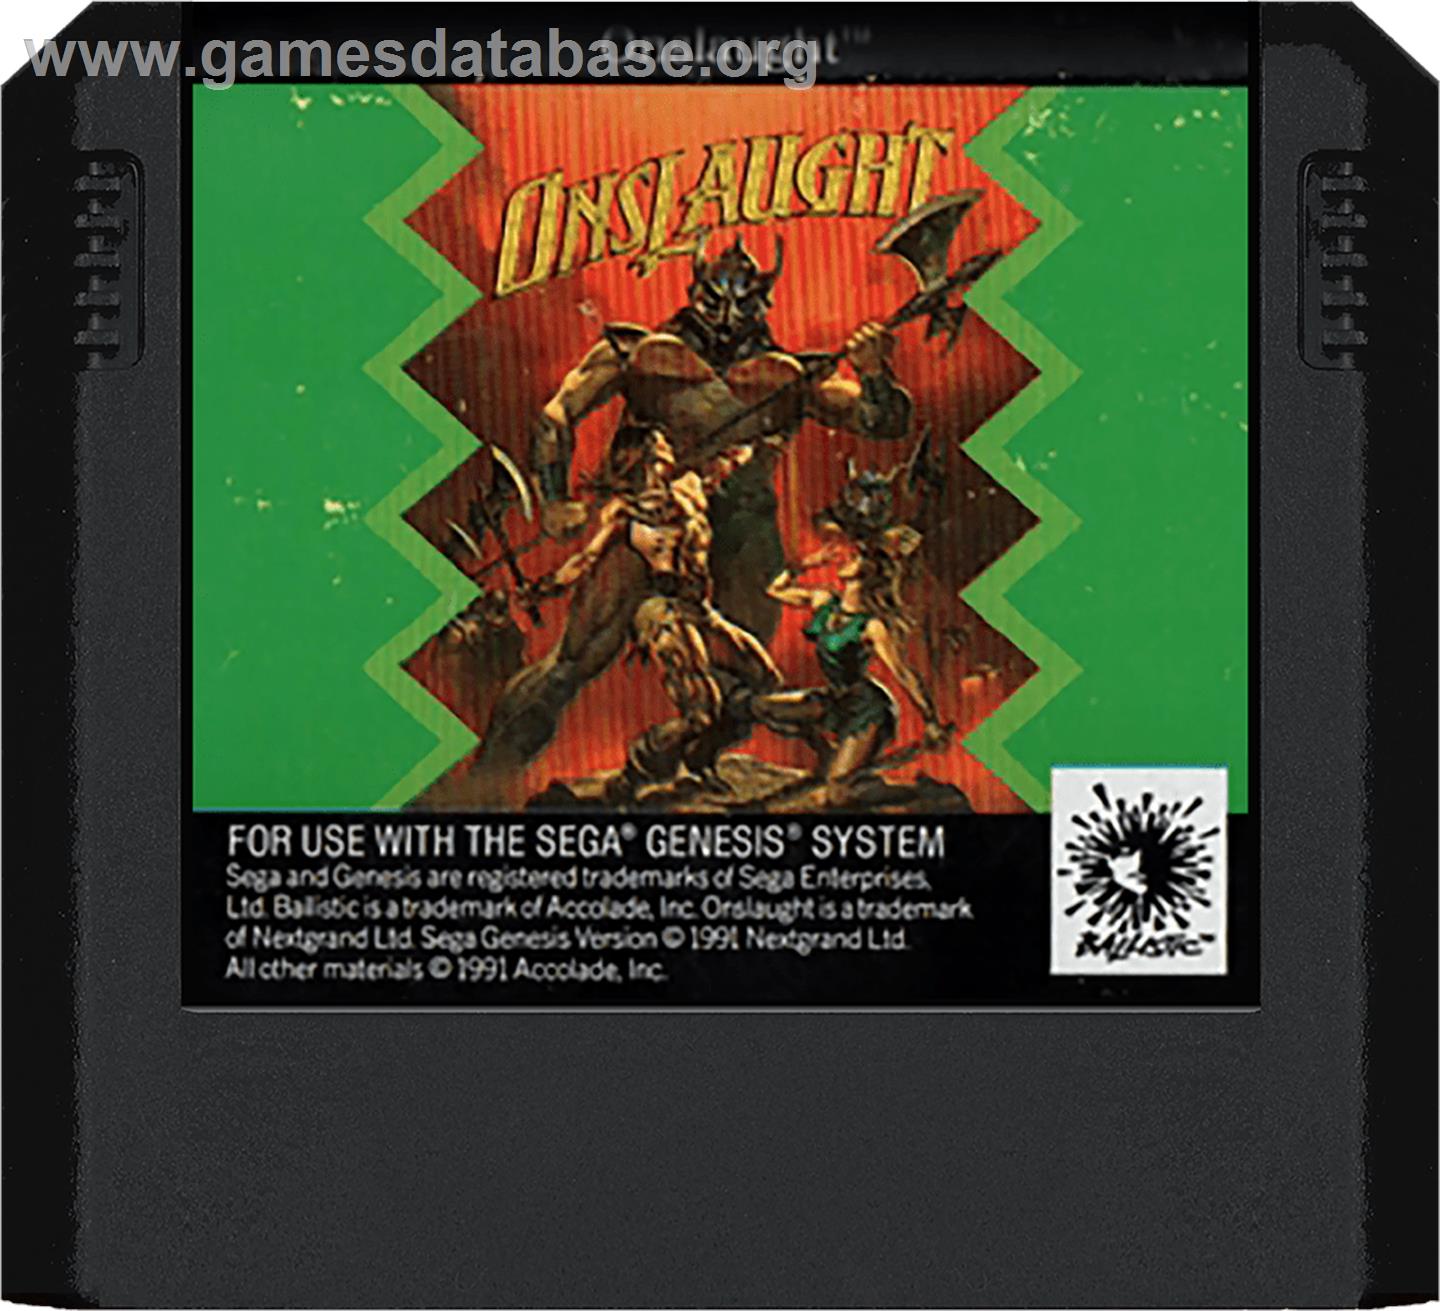 Onslaught - Sega Genesis - Artwork - Cartridge